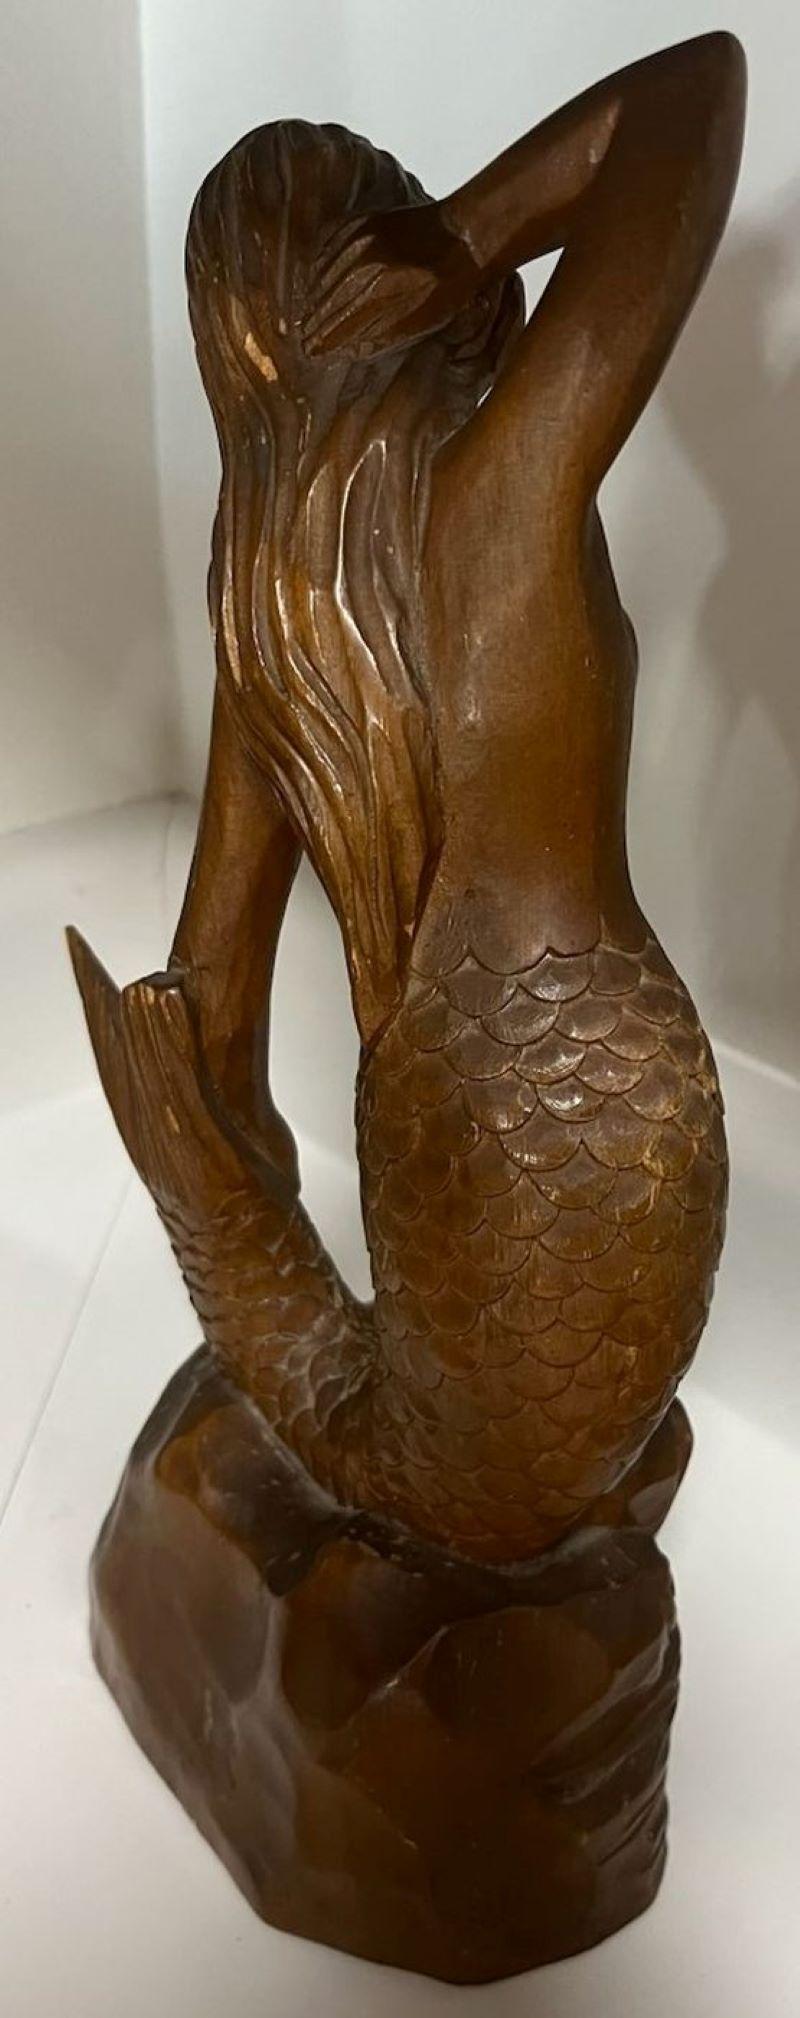 carved wooden mermaid